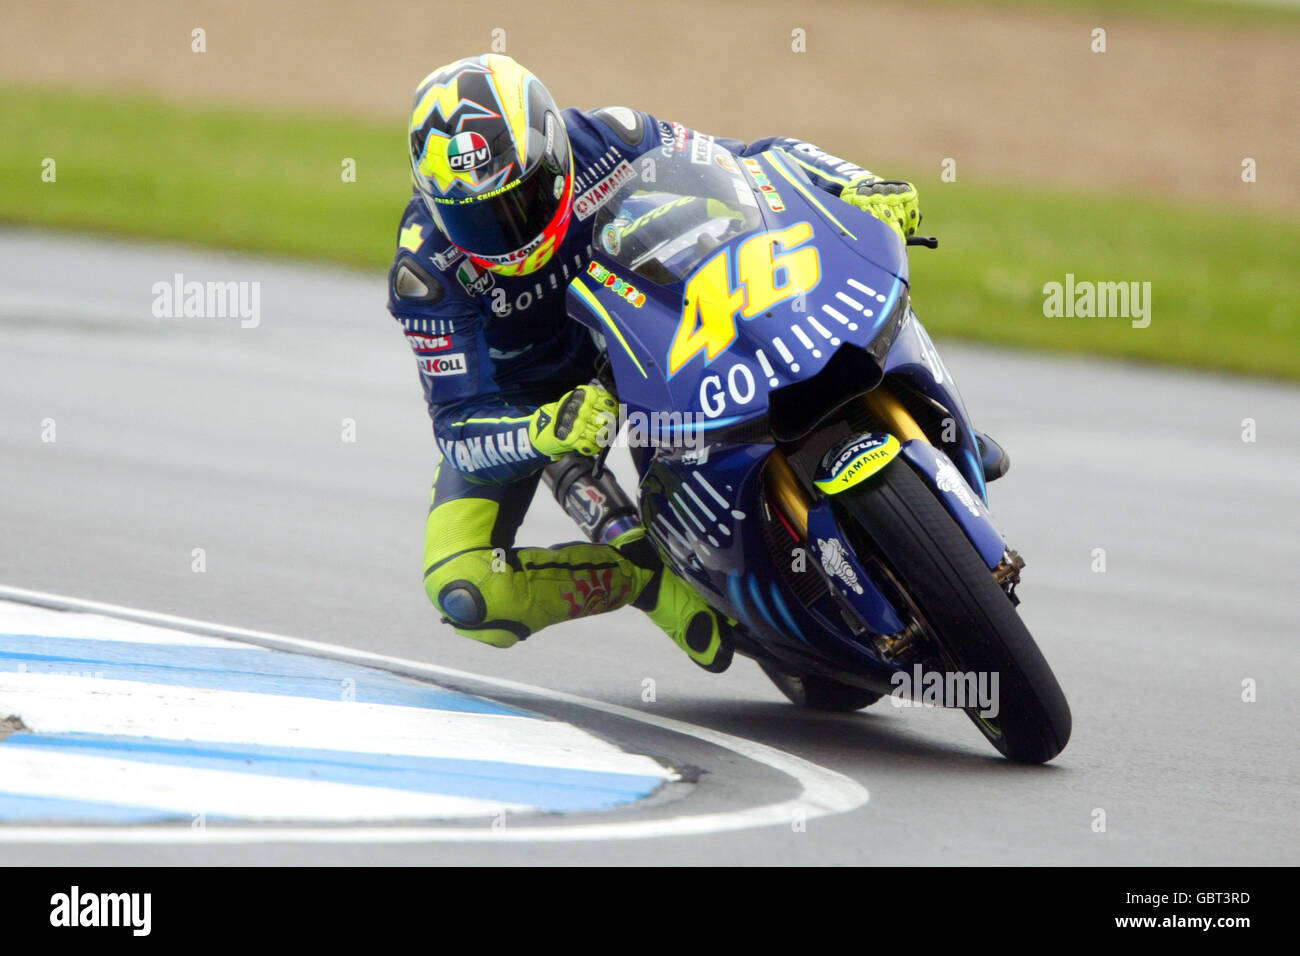 Motorradfahren - großer Preis von Großbritannien - Moto GP - Rennen. Valentino Rossi in Aktion Stockfoto